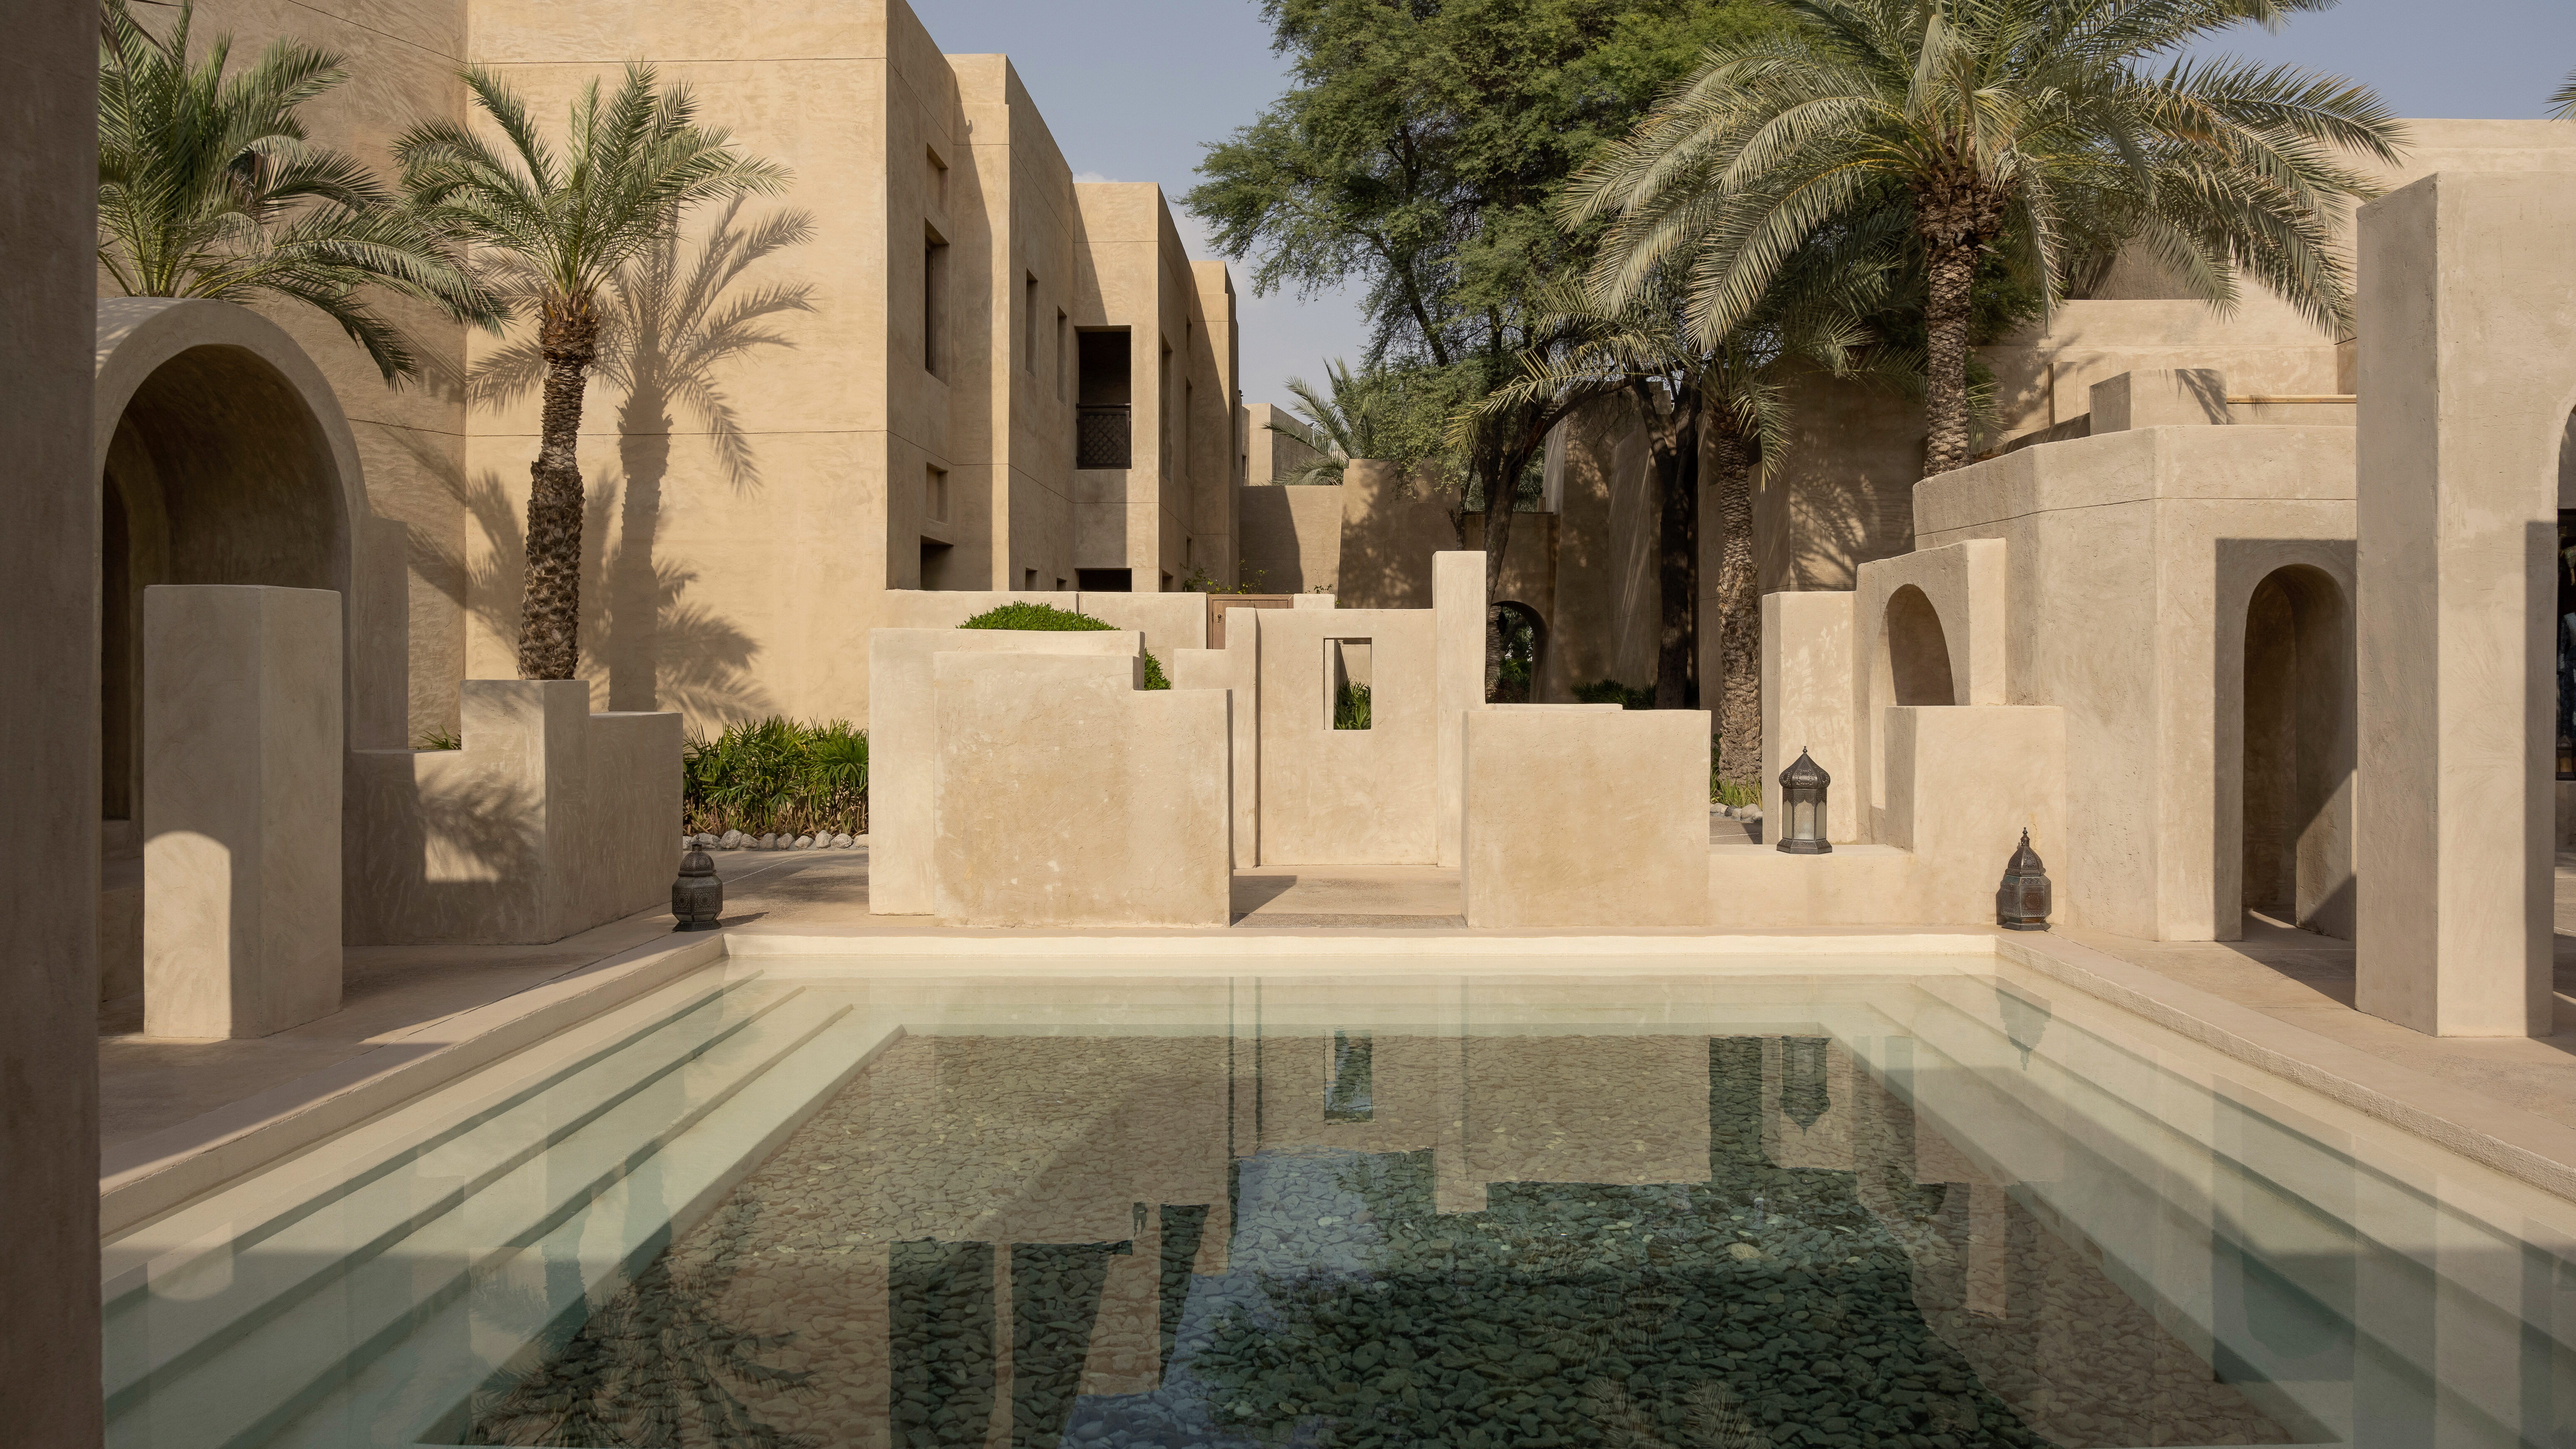 Bab Al Shams Desert Resort Dubai